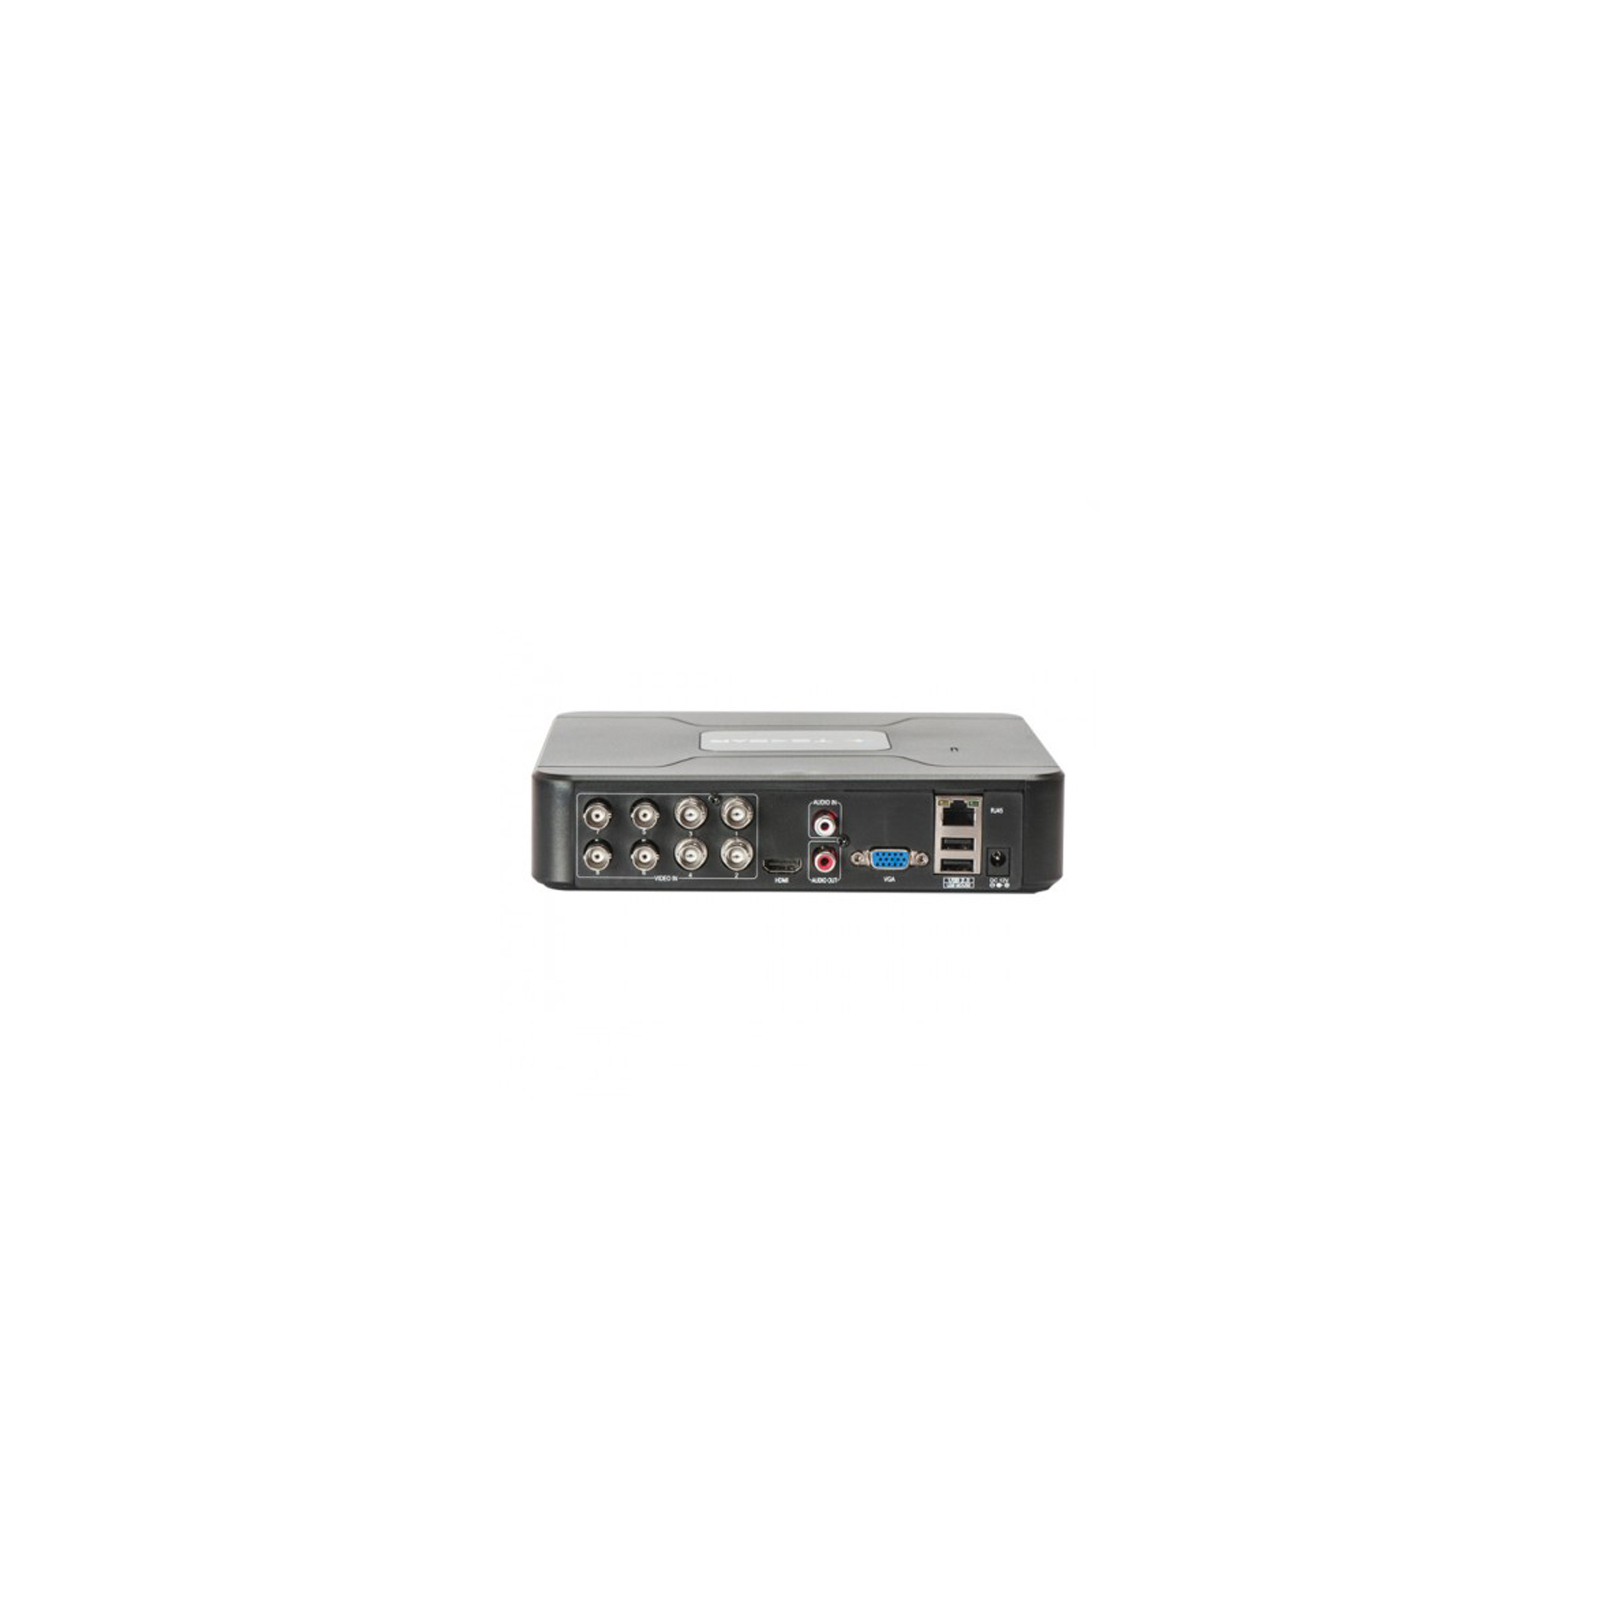 Регистратор для видеонаблюдения Tecsar HDVR Modernist + HDD 1TB (6913) изображение 3